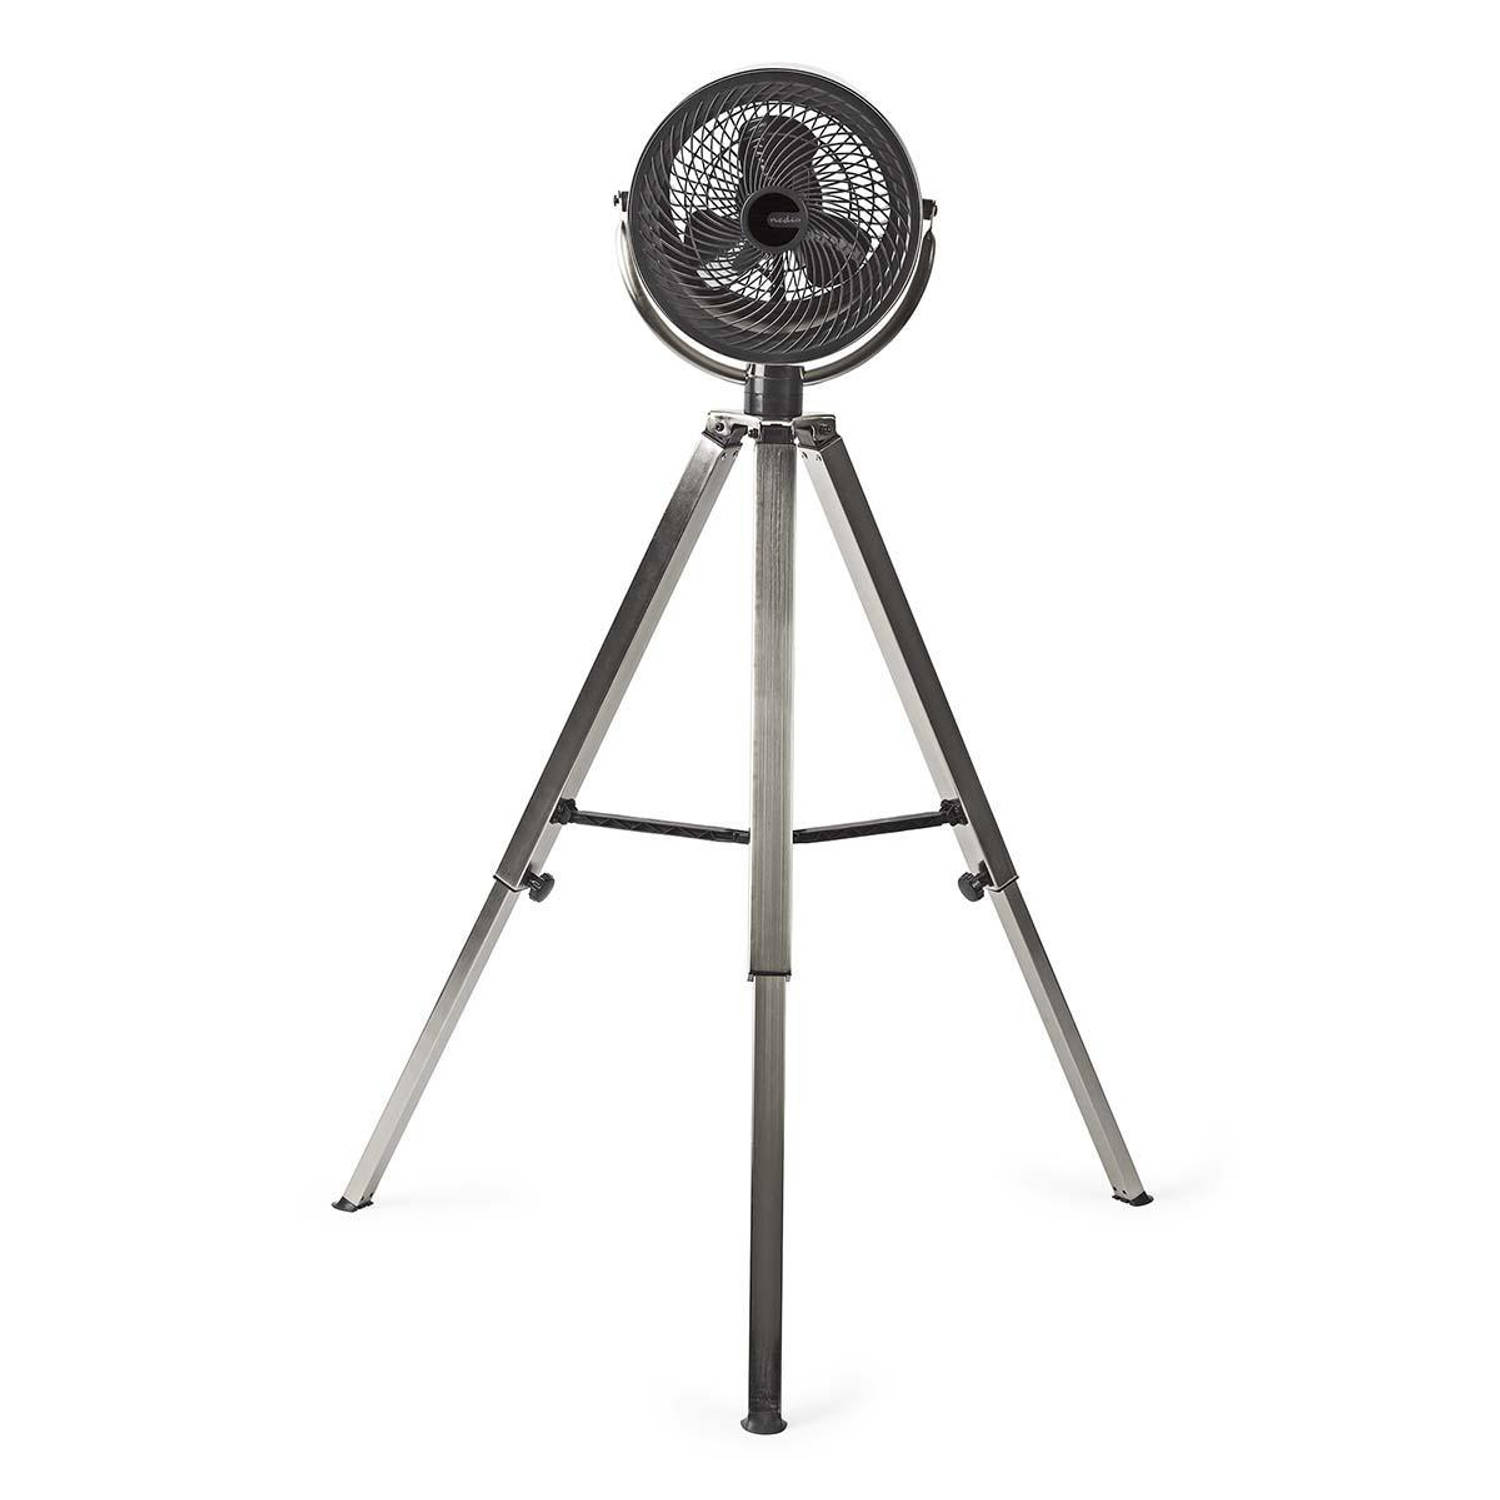 Ventilator op Driepoot | Diameter 25 cm | 3 snelheden | Geborsteld metaal